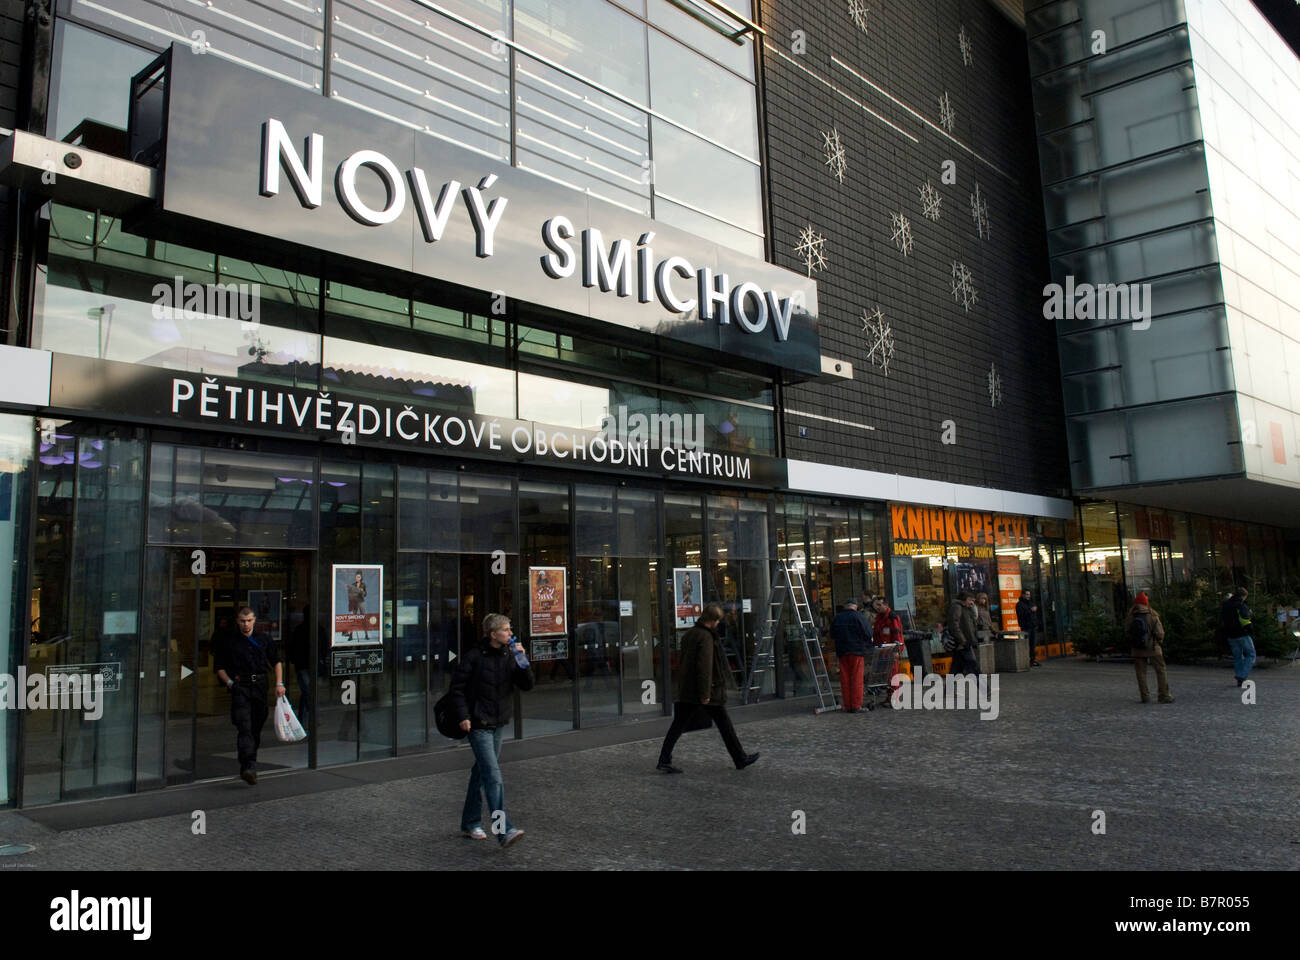 Novy Smichov shopping center in Andel in Prague Stock Photo - Alamy